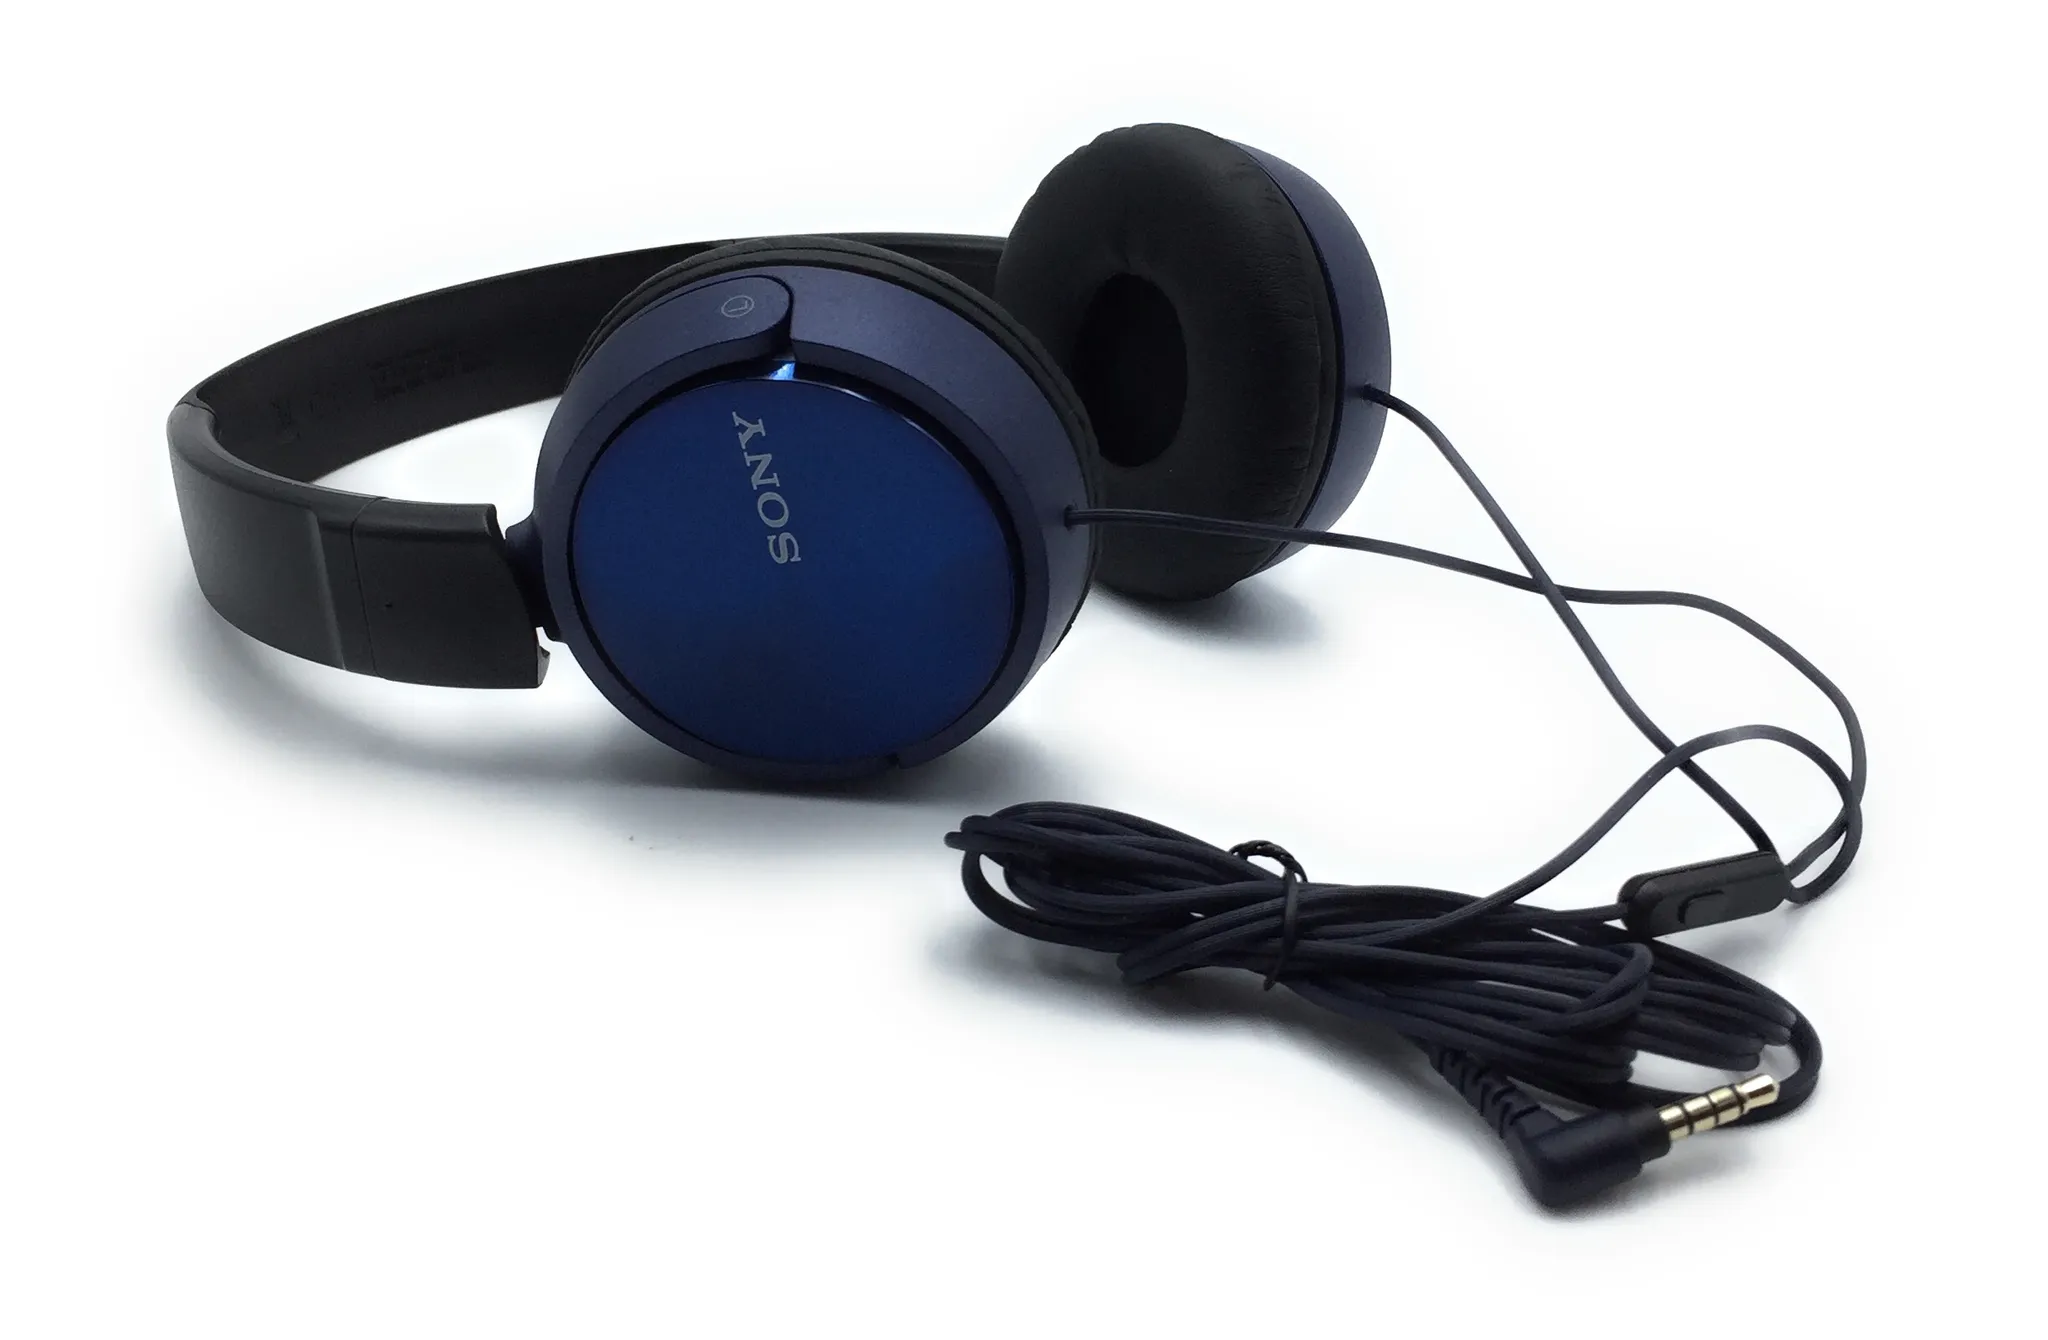 blau MDR-ZX310AP SONY, Over-Ear